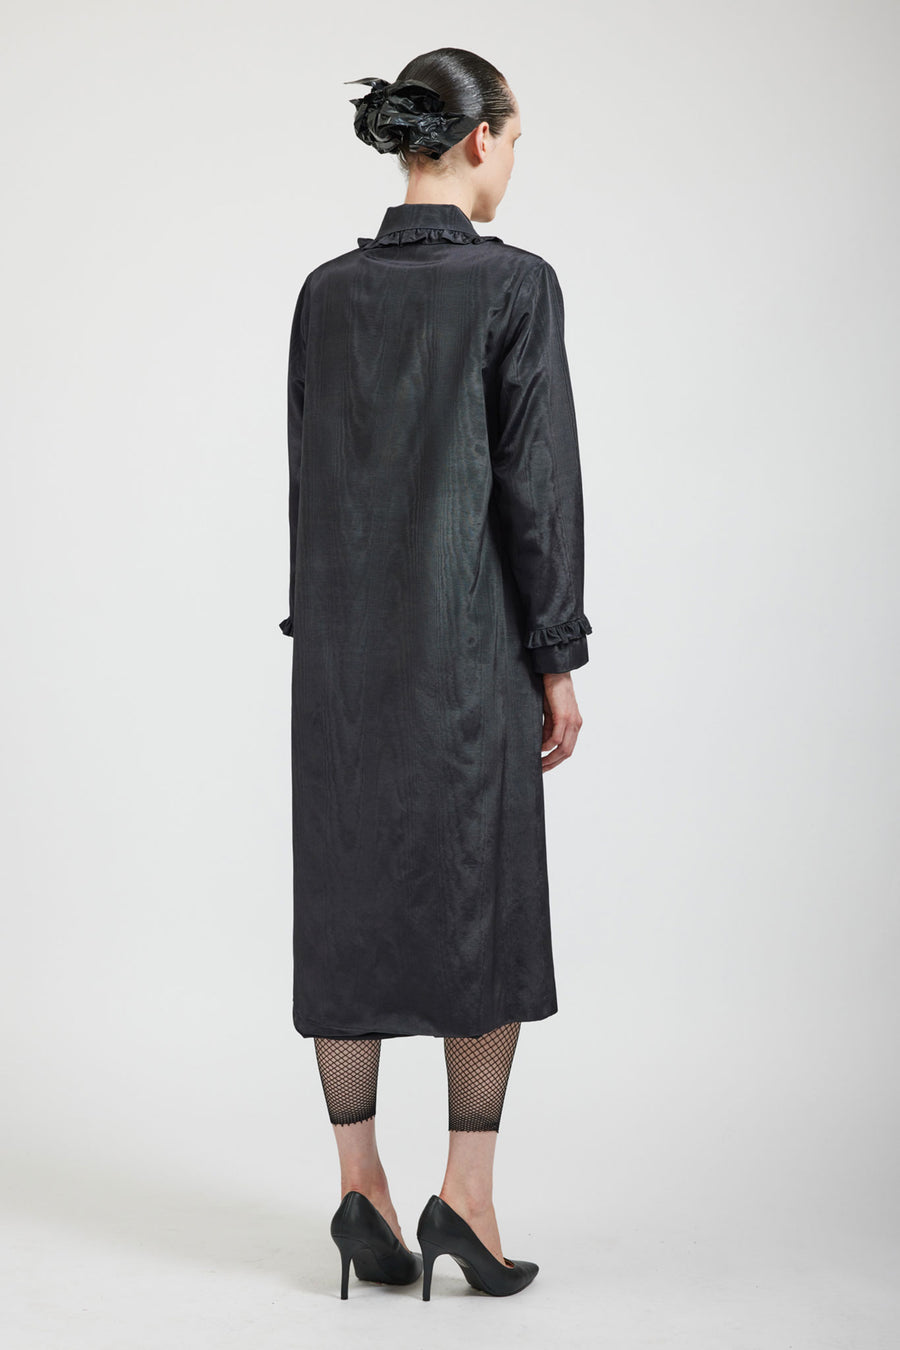 BATSHEVA - Ruffle Coat in Black Moiré